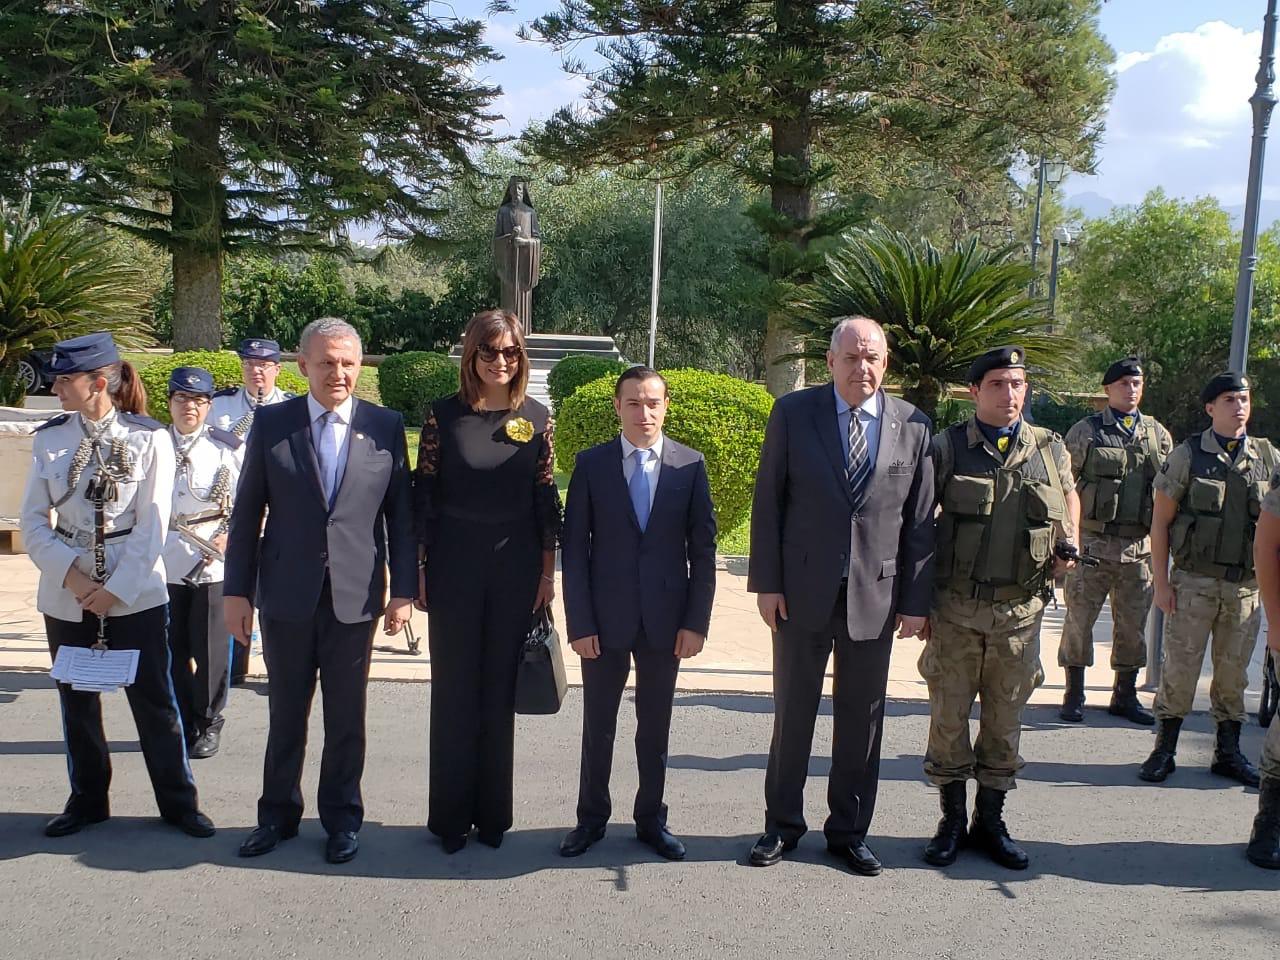   الرئيس القبرصي يستقبل وزيرة الهجرة خلال مؤتمر إحياء الجذور «نوستوس»